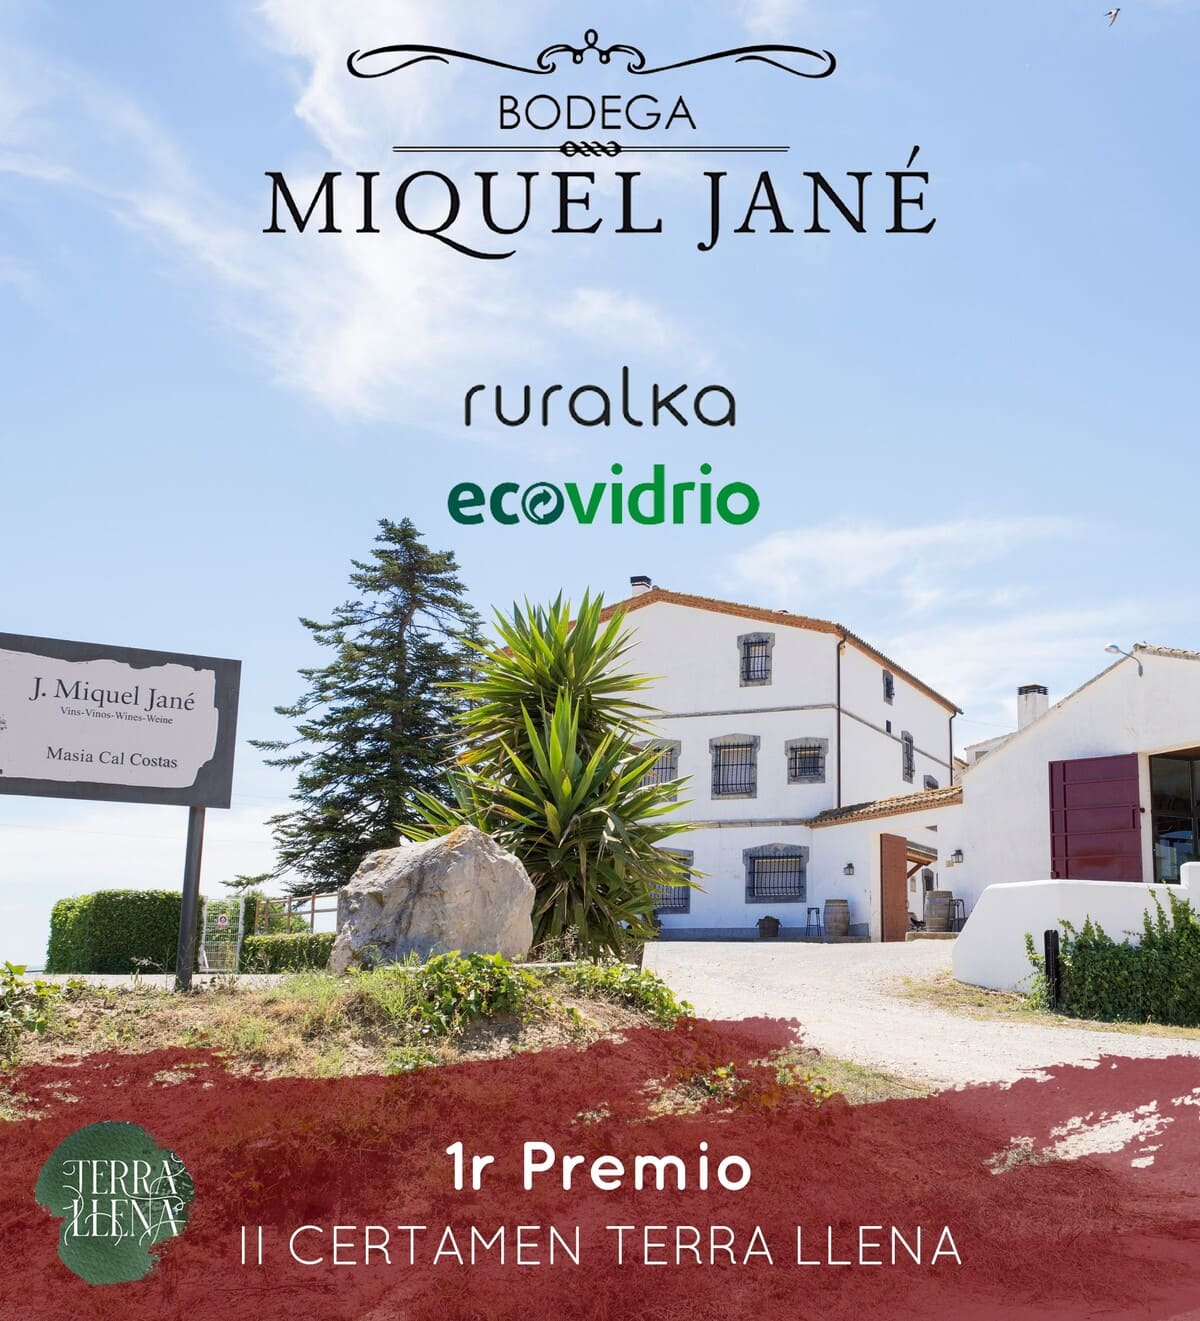 Bodega Miquel Jané galardonada con el Primer Premio en el II Certamen Terra Llena de Ruralka y Ecovidrio